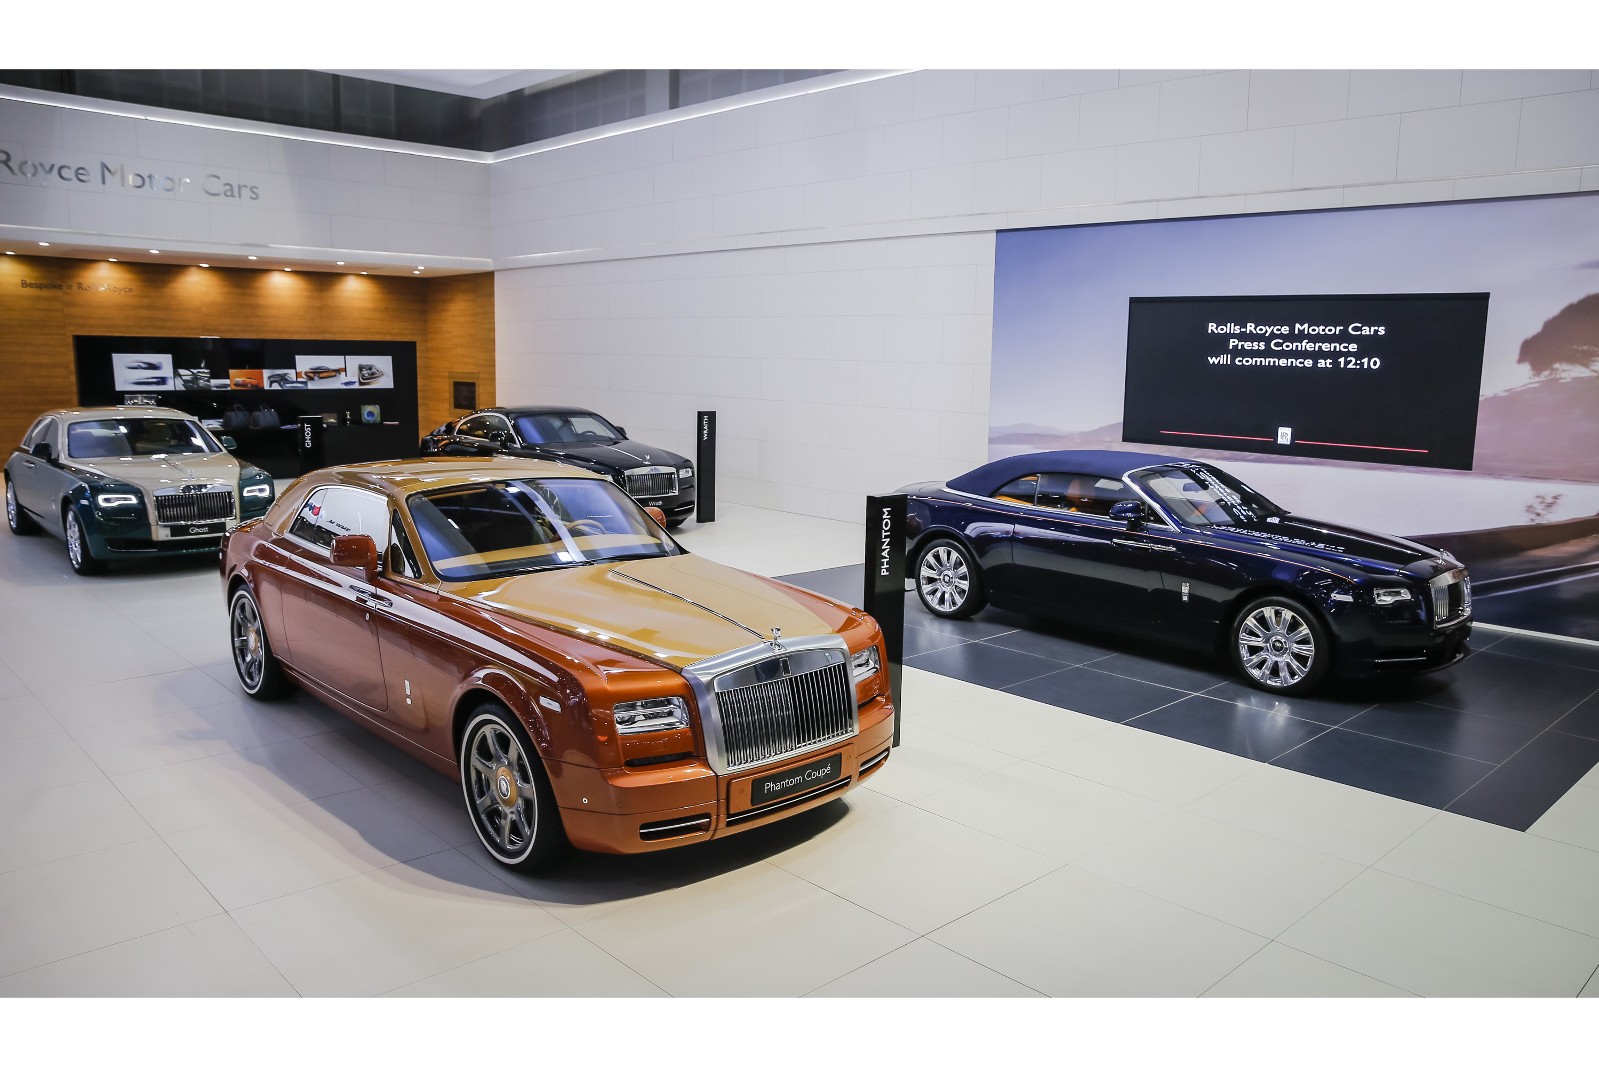 "بالصور" رولزرويس فانتوم كوبيه 2016 تايجر وجوست جولف ايديشن 2016 تظهران بألوان جذابة Rolls-Royce 1